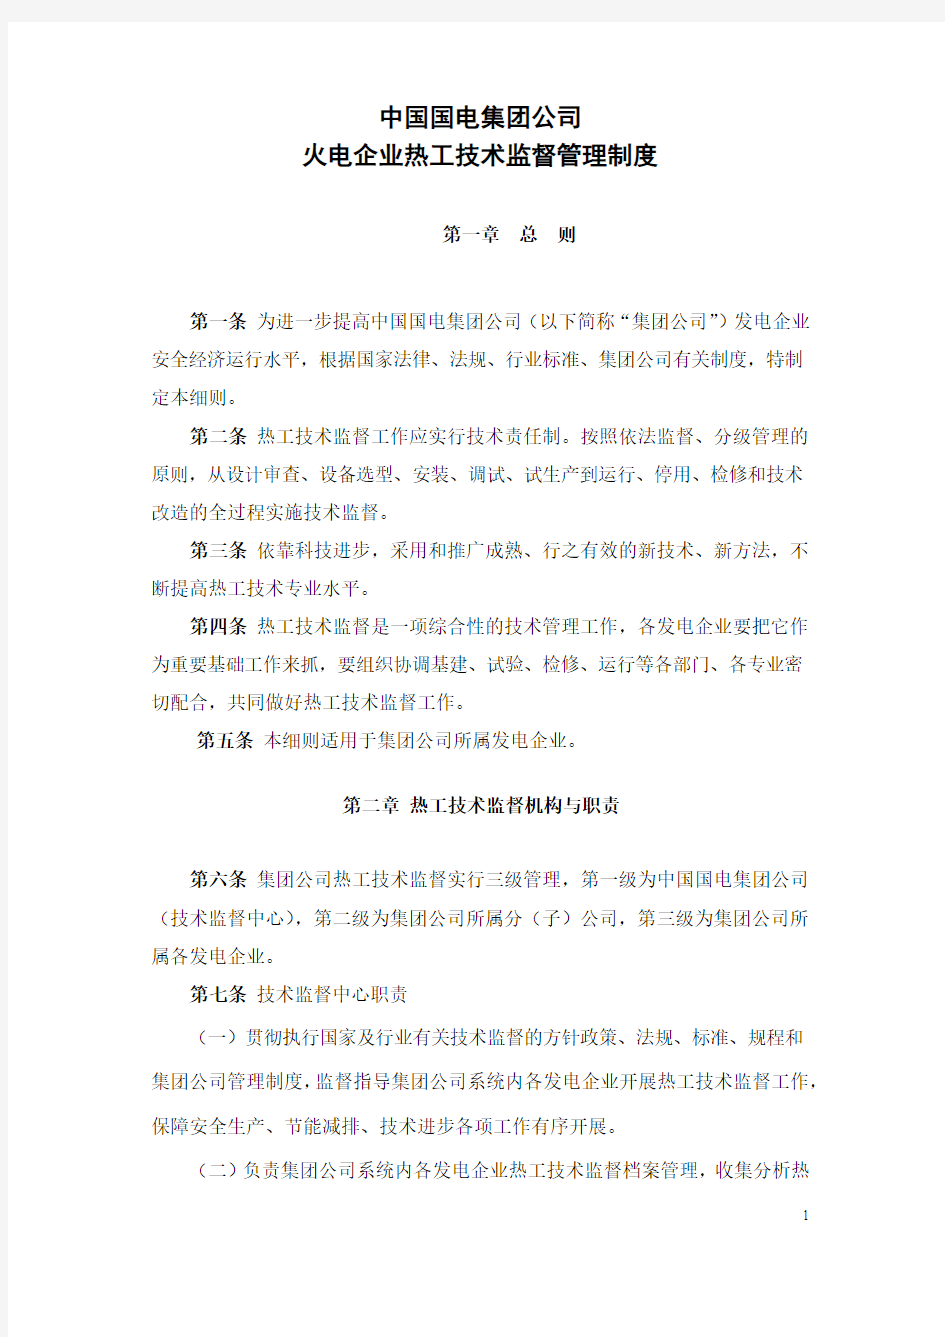 10中国国电集团公司热工技术监督实施细则